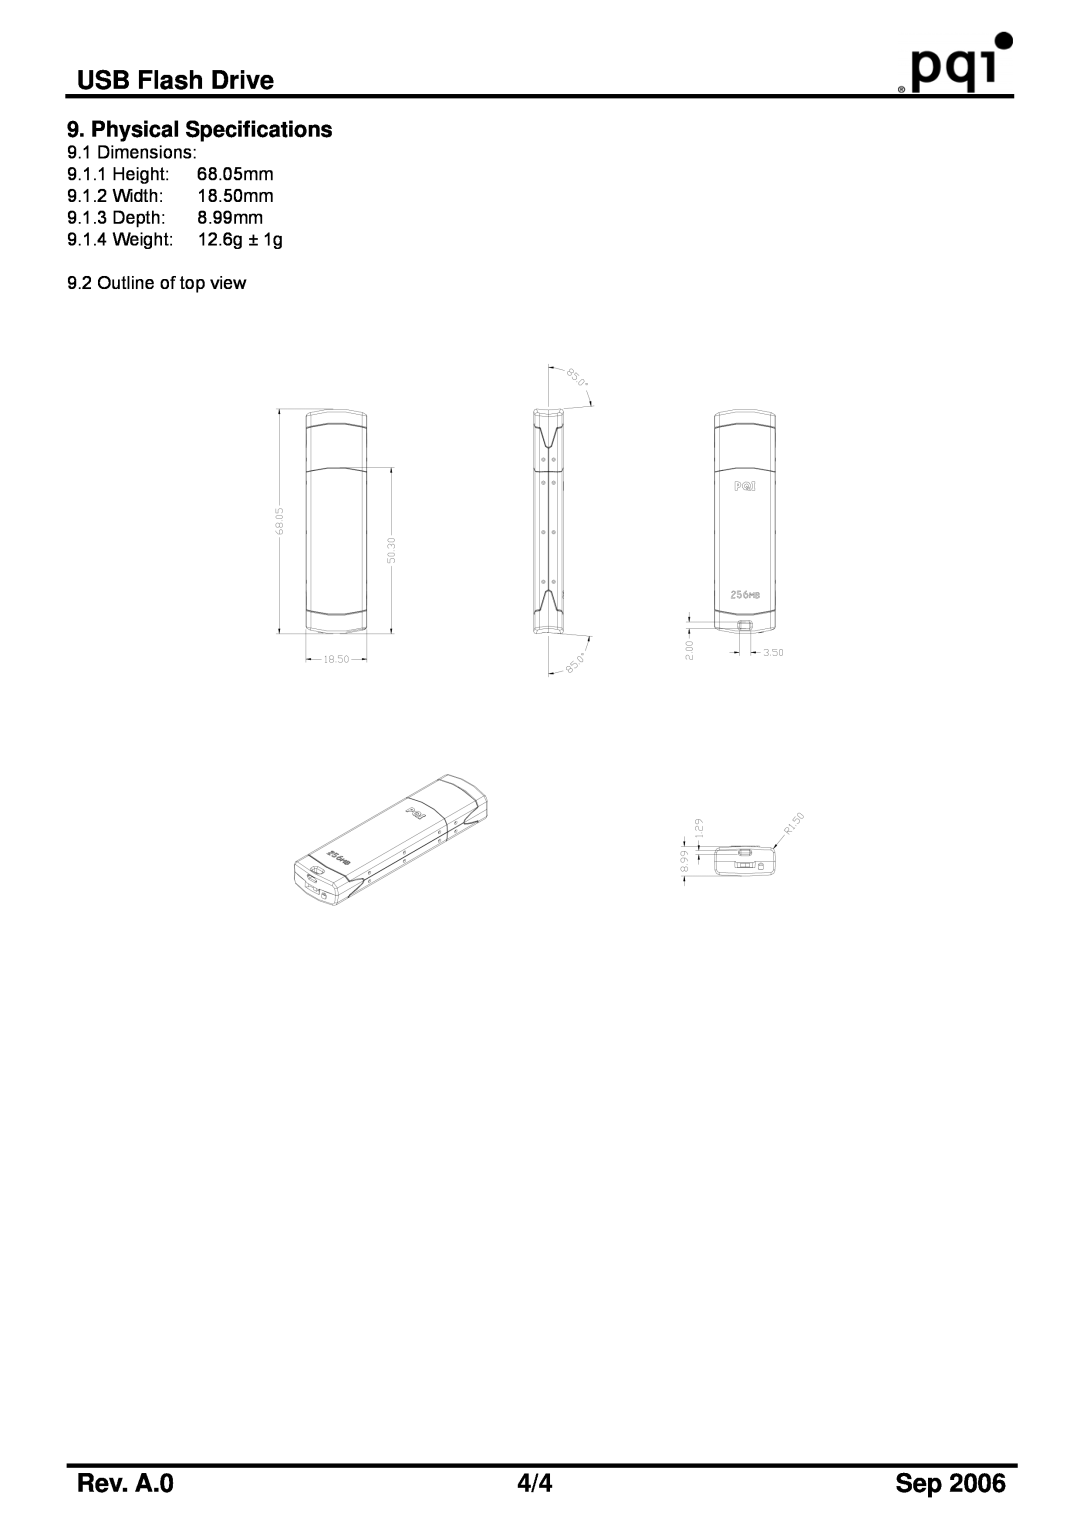 PQI U339S manual USB Flash Drive, Rev. A.0, Dimensions 9.1.1 Height 68.05mm 9.1.2 Width 18.50mm 